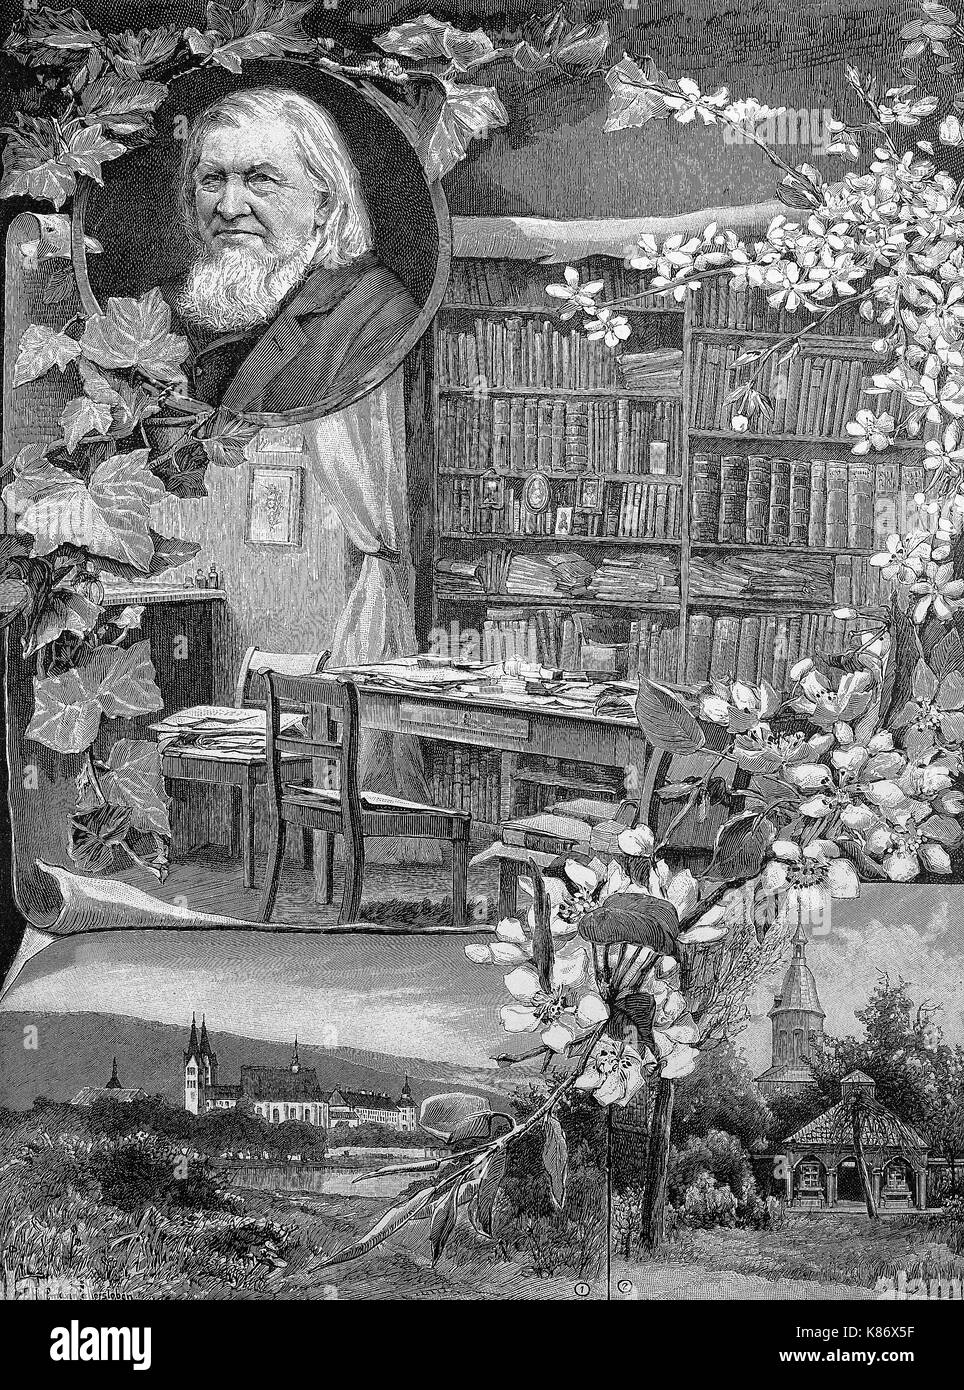 Eine Illustration für den 100. Geburtstag von August Heinrich Hoffmann von Fallersleben, 1798-1874, ein deutscher Dichter, auf seinem Schreibtisch, der Garten sein Geburtshaus und das Palais von Corvey, Digital verbesserte Reproduktion einer Vorlage woodprint aus dem 19. Jahrhundert Stockfoto